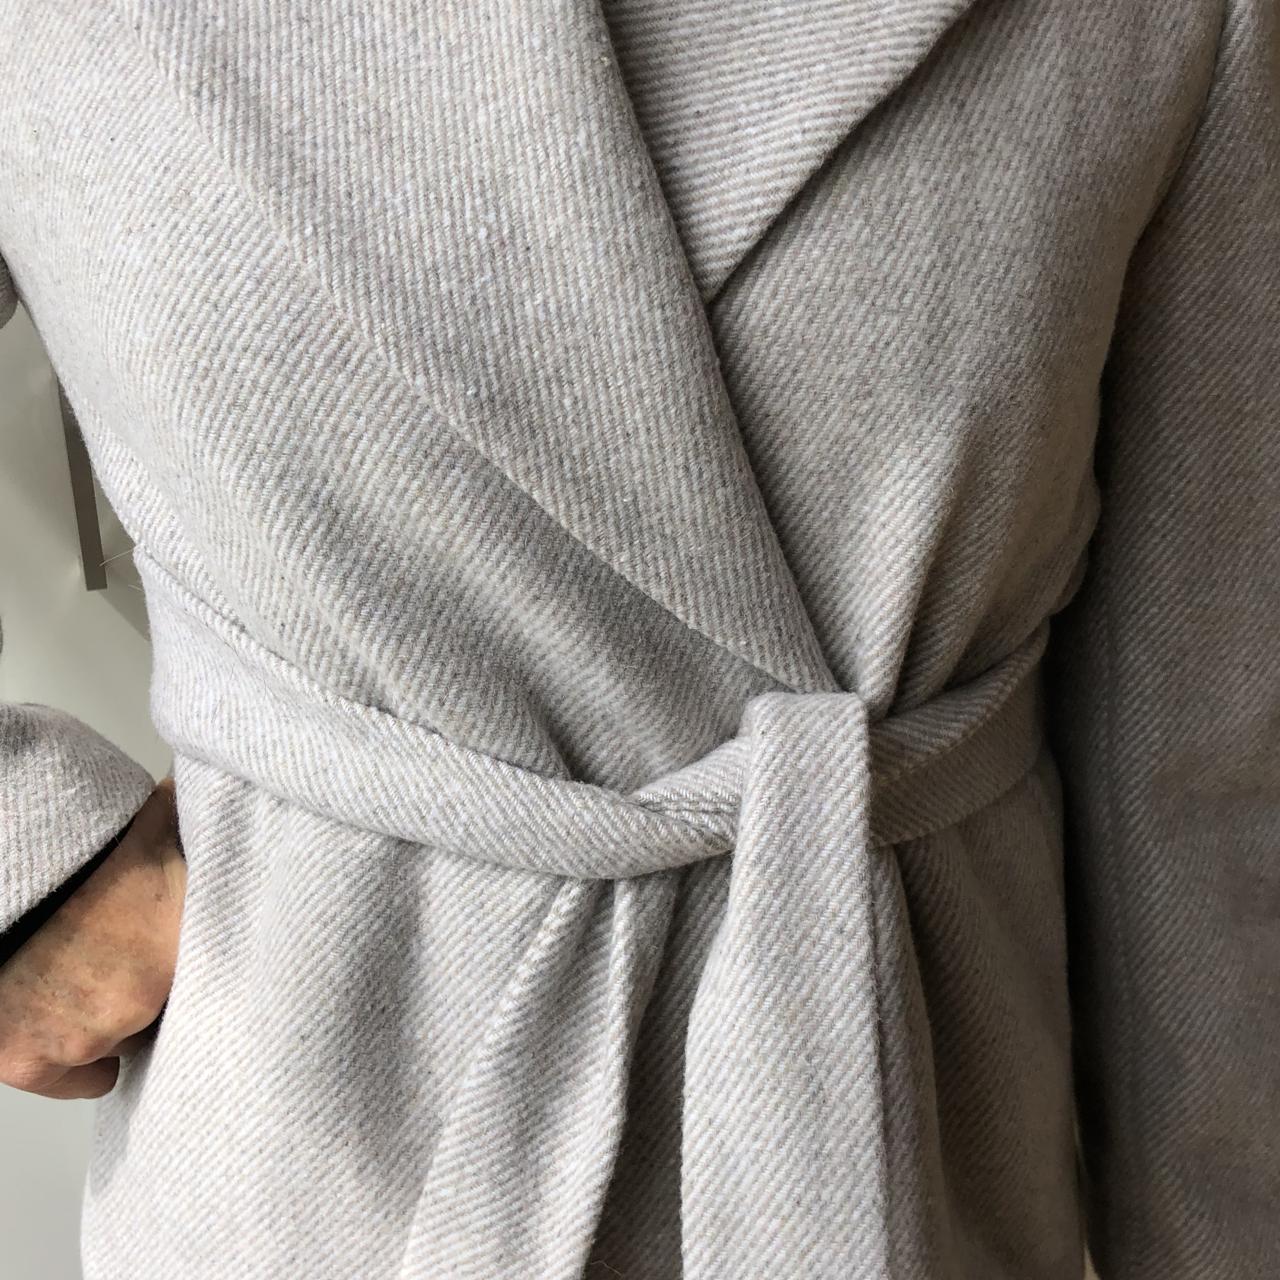 100% wool wrap jacket in beige with grey stripes.... - Depop